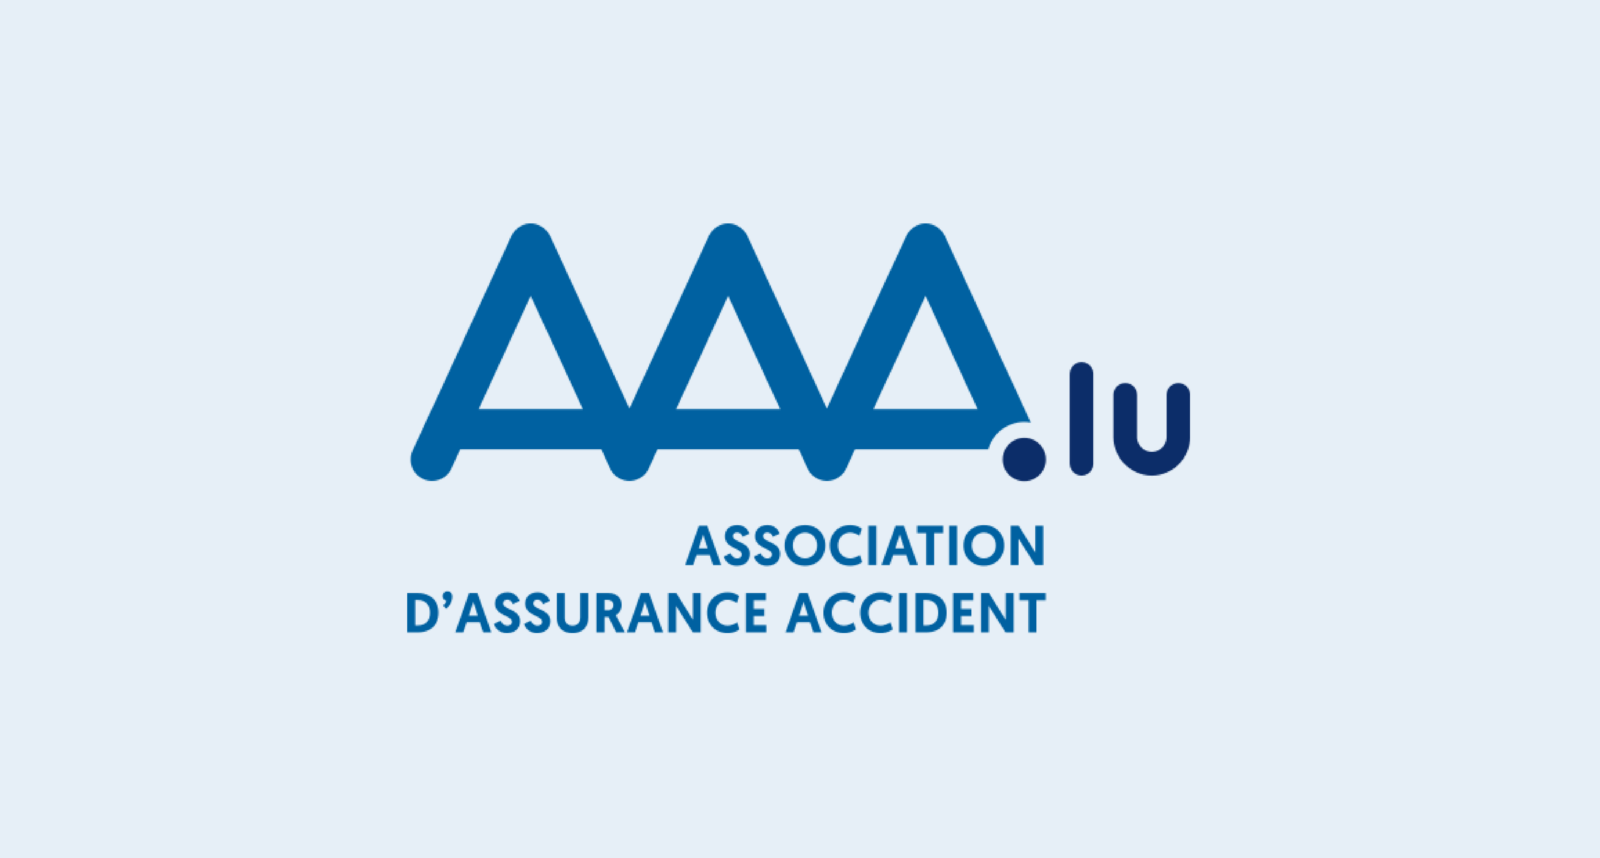 Association d'Unfallversicherung in Luxemburg